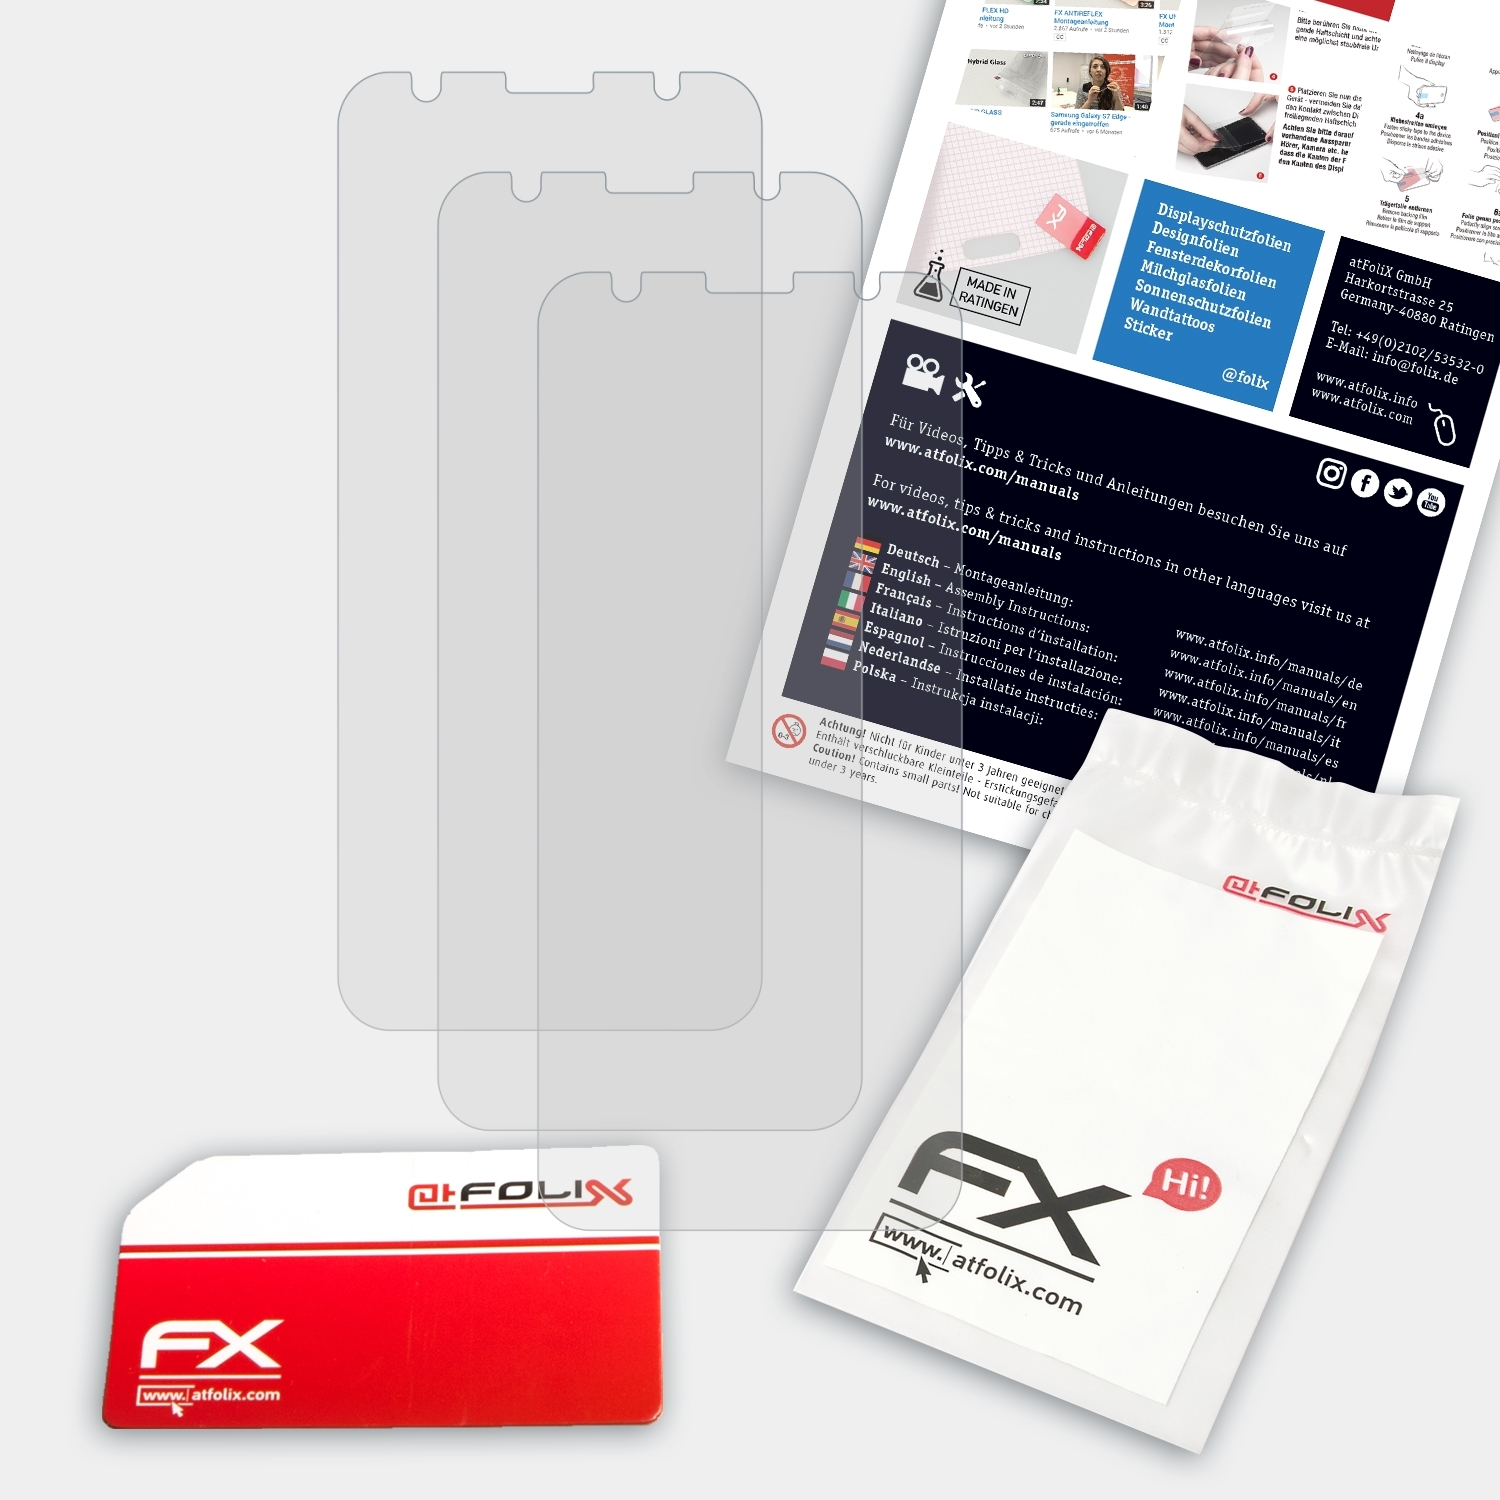 ATFOLIX 3x FX-Antireflex (ZB556KL)) Asus Zenfone Displayschutz(für Max